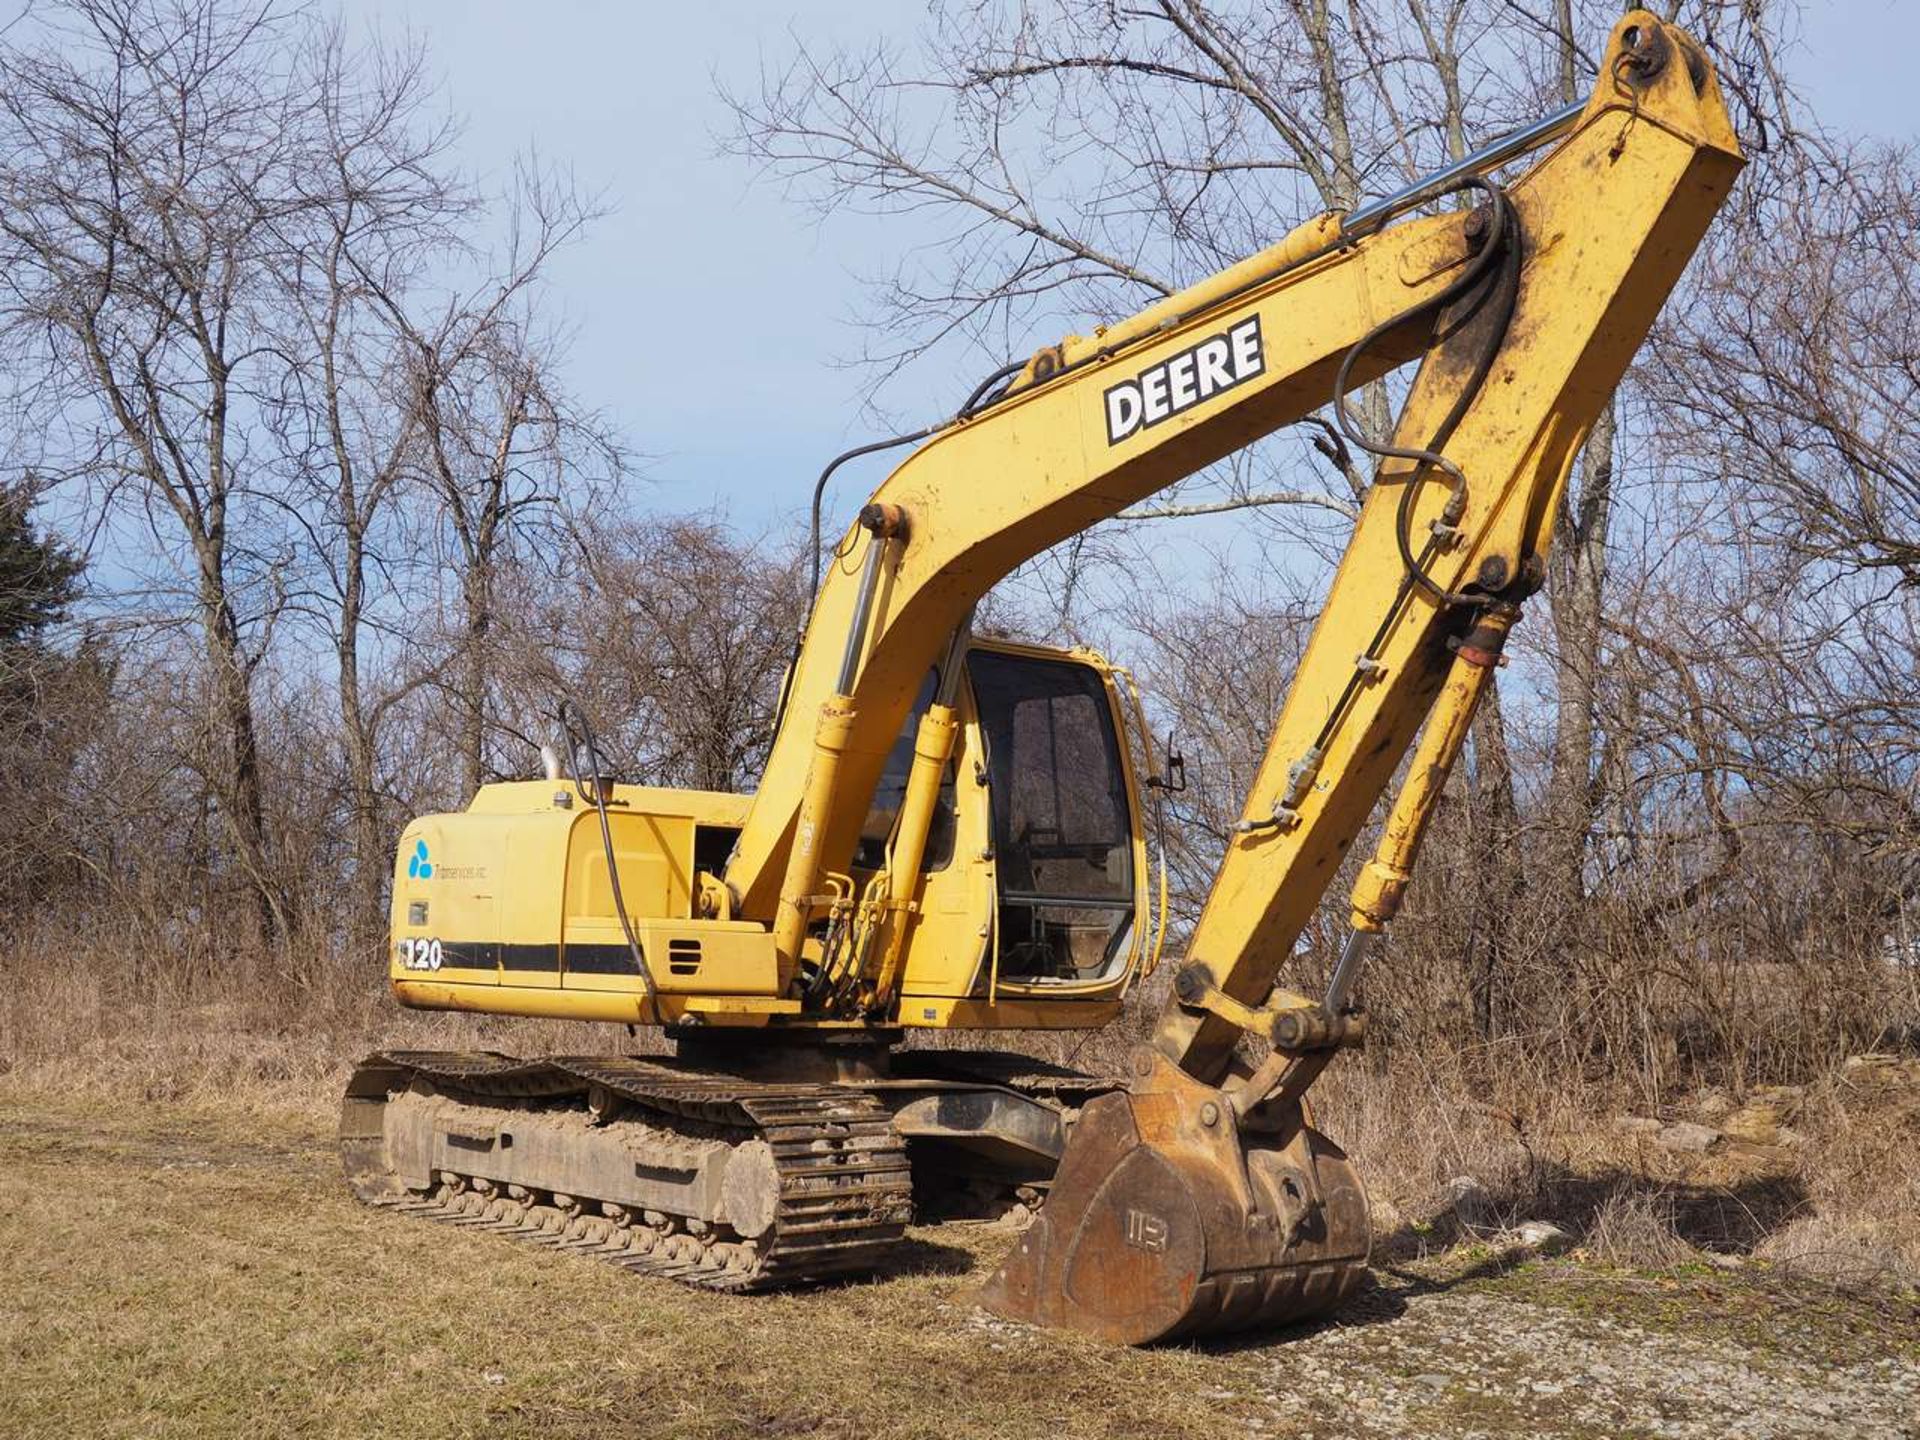 John Deere 120 Excavator